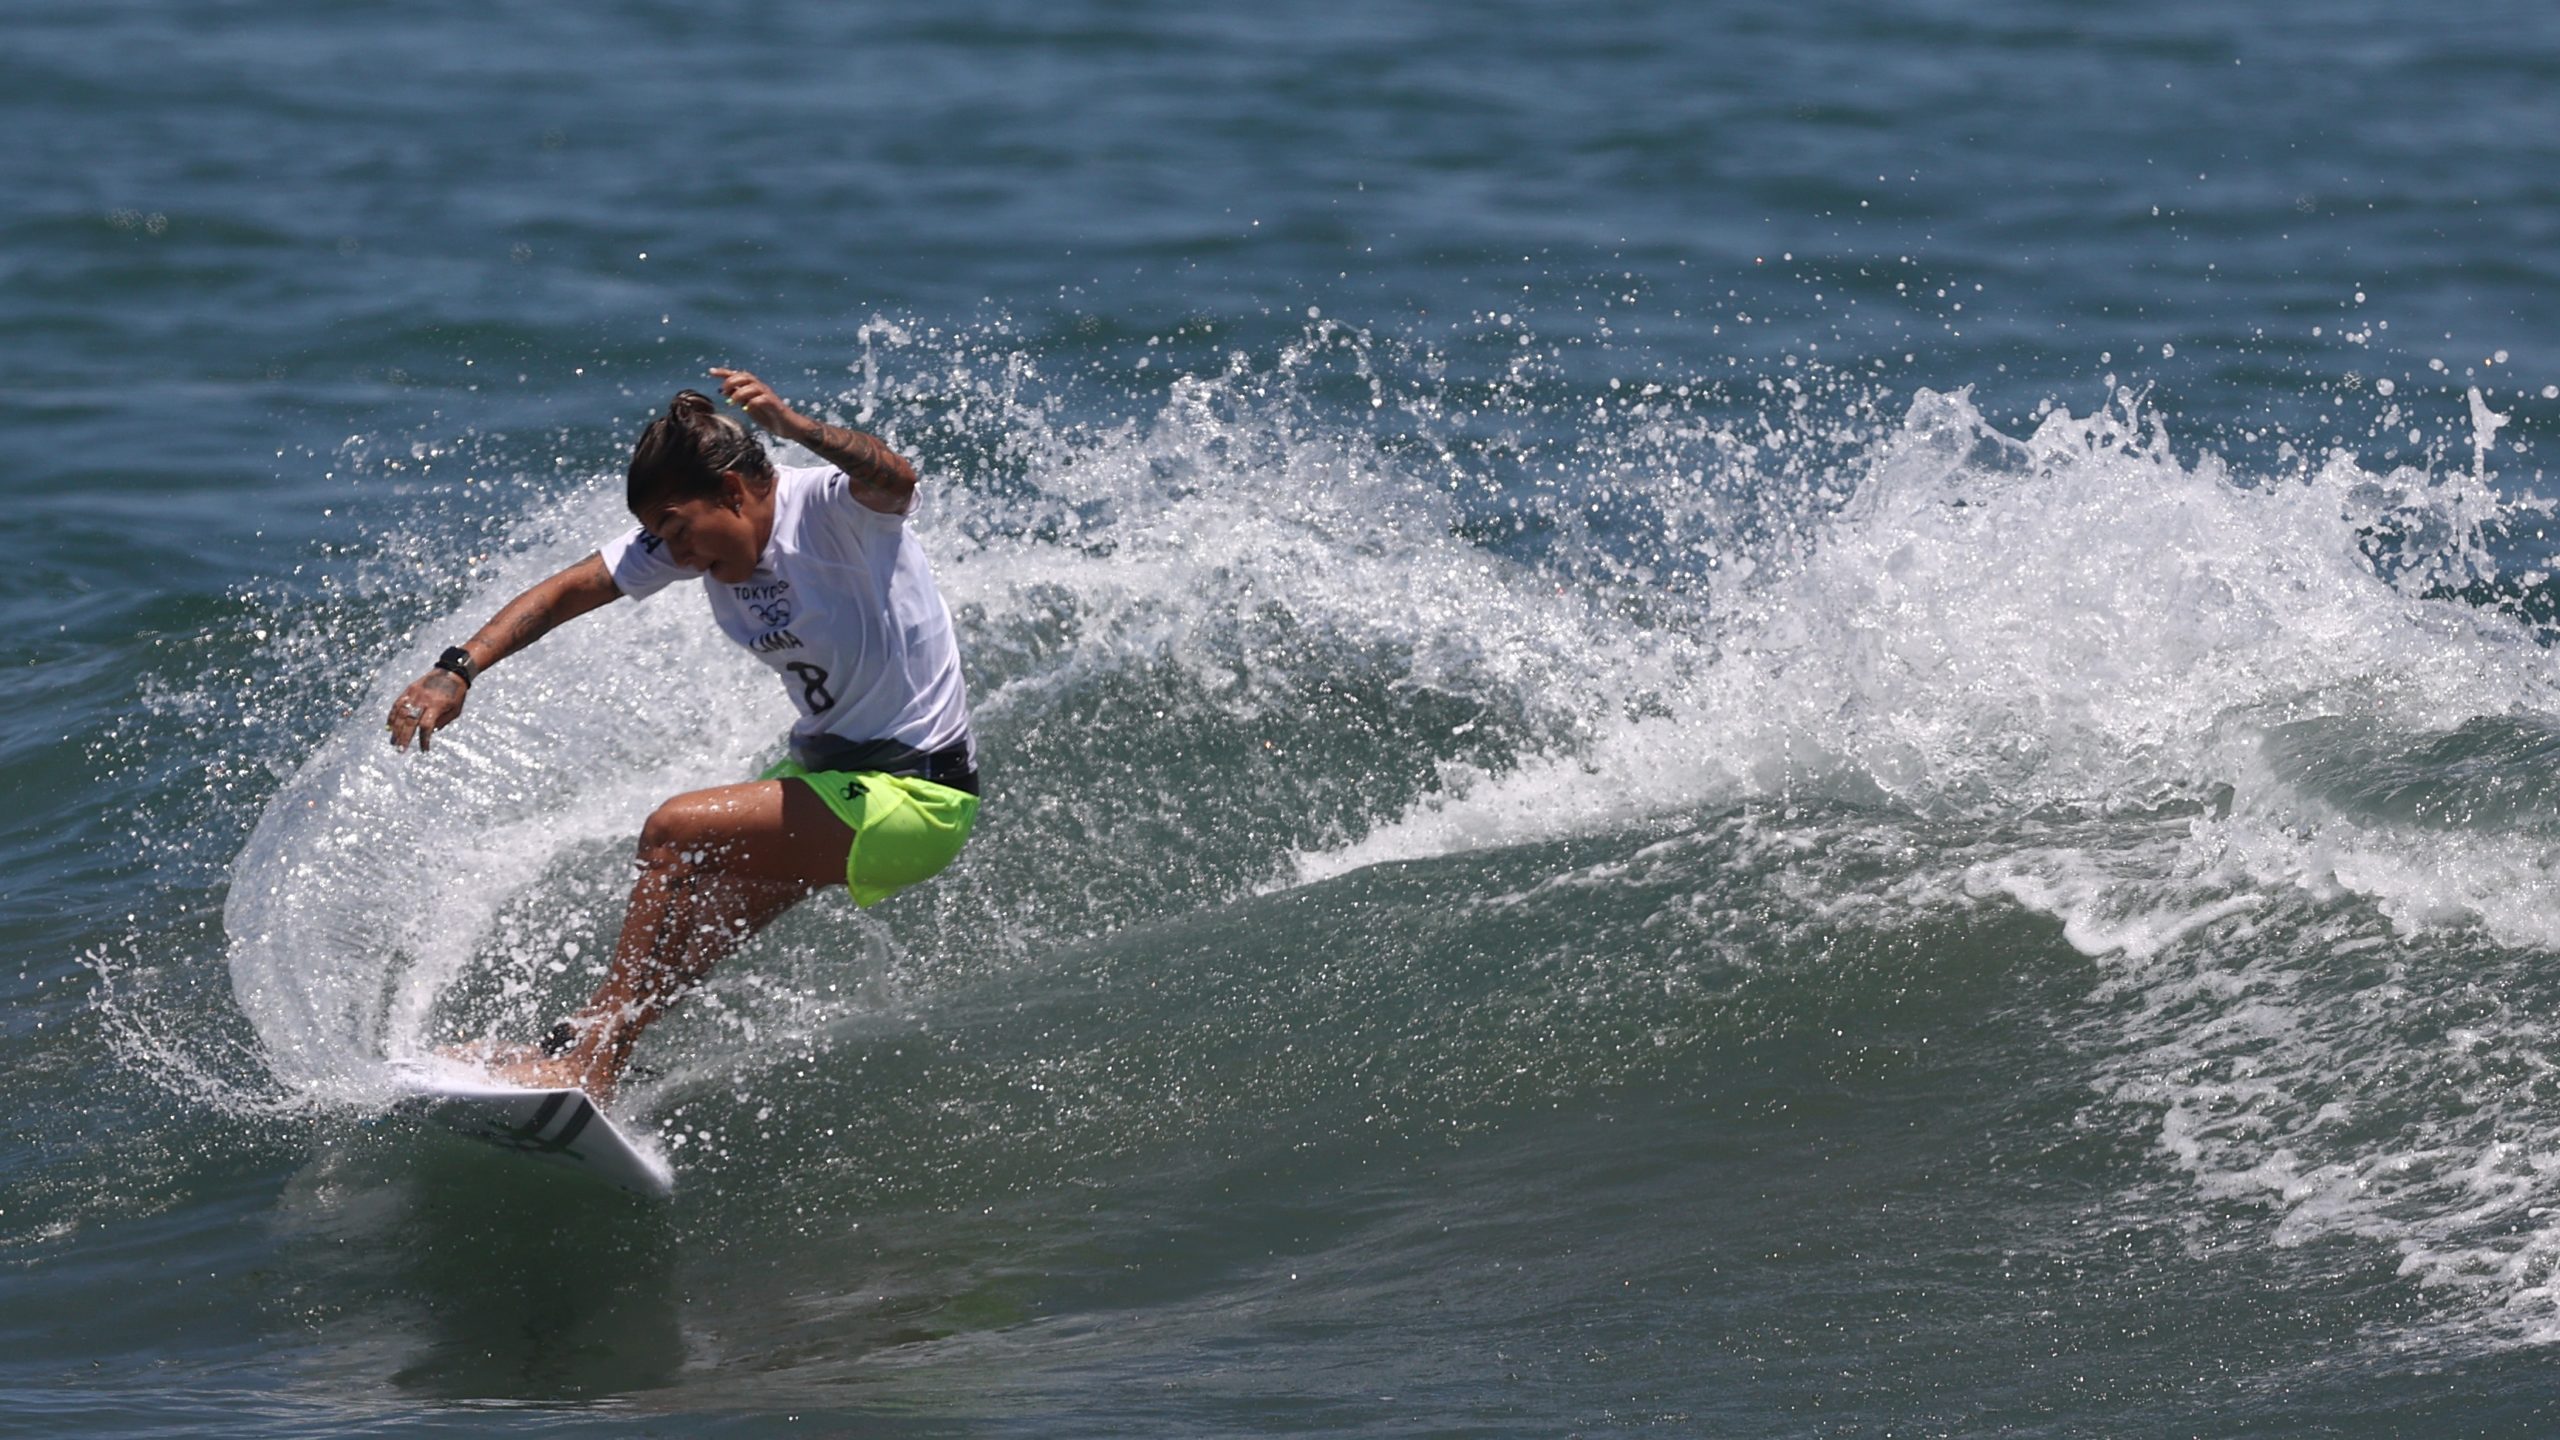 Silvana Lima e Tatiana Weston-Webb se classificam para oitavas de final do surfe feminino